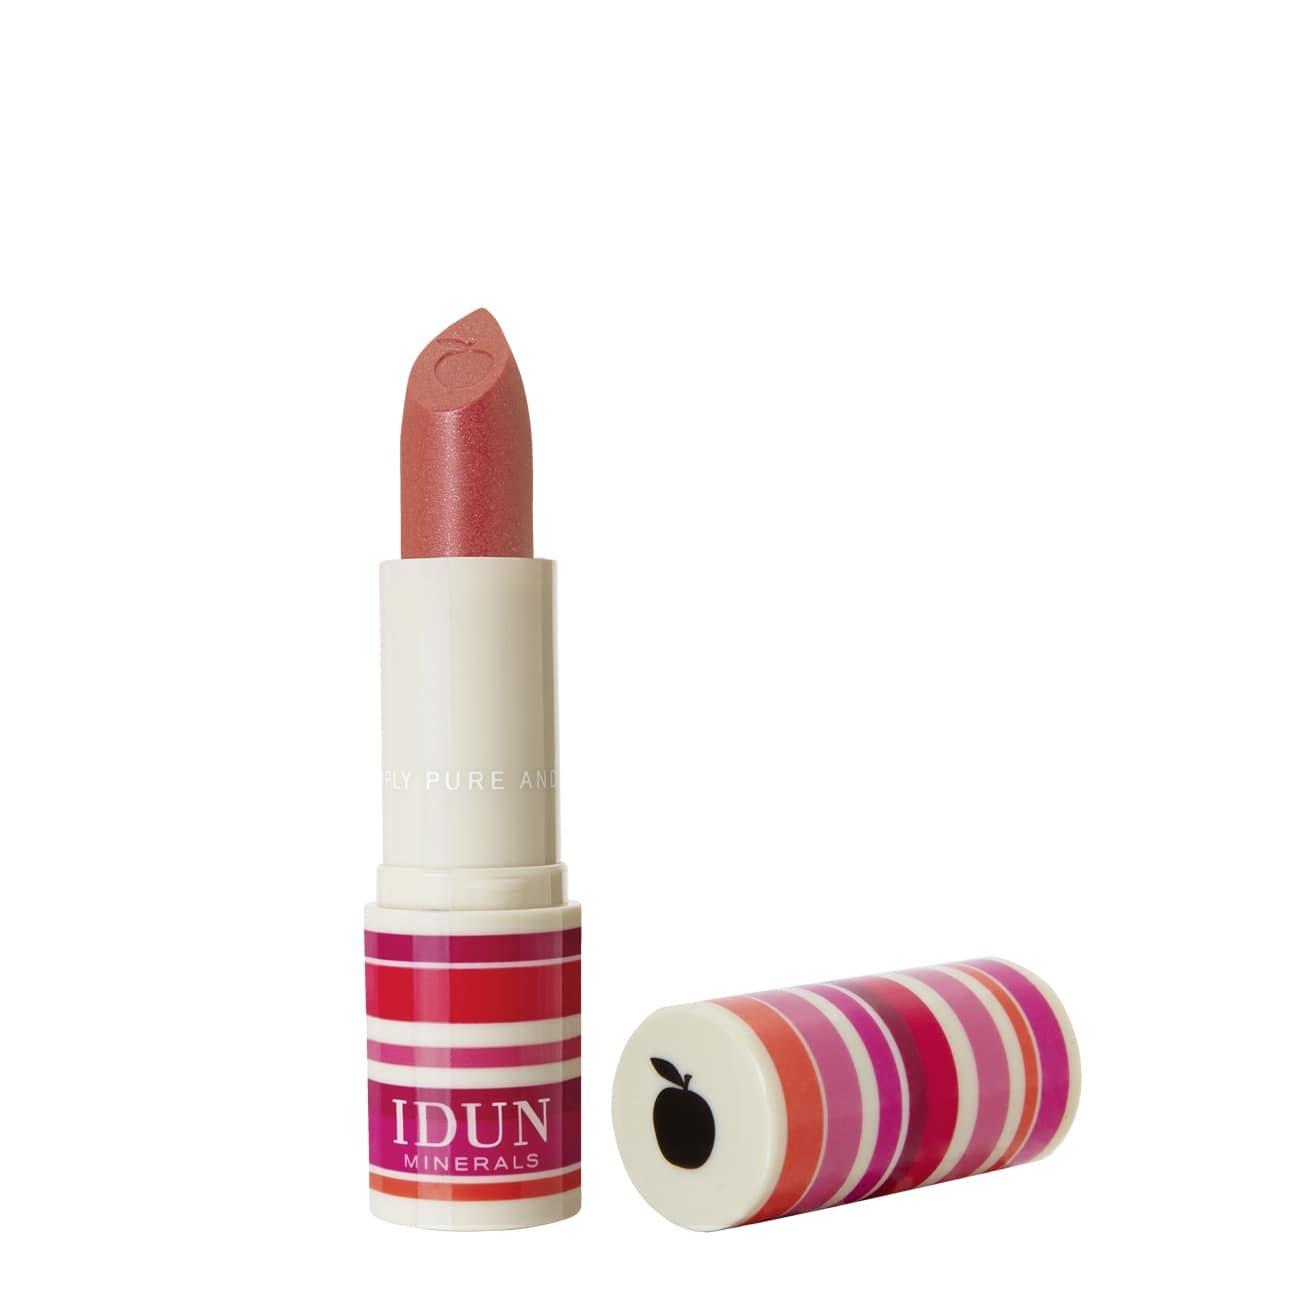 Creme Lippenstift Ingrid Marie Damen Cherry Red 3.6G von IDUN Minerals